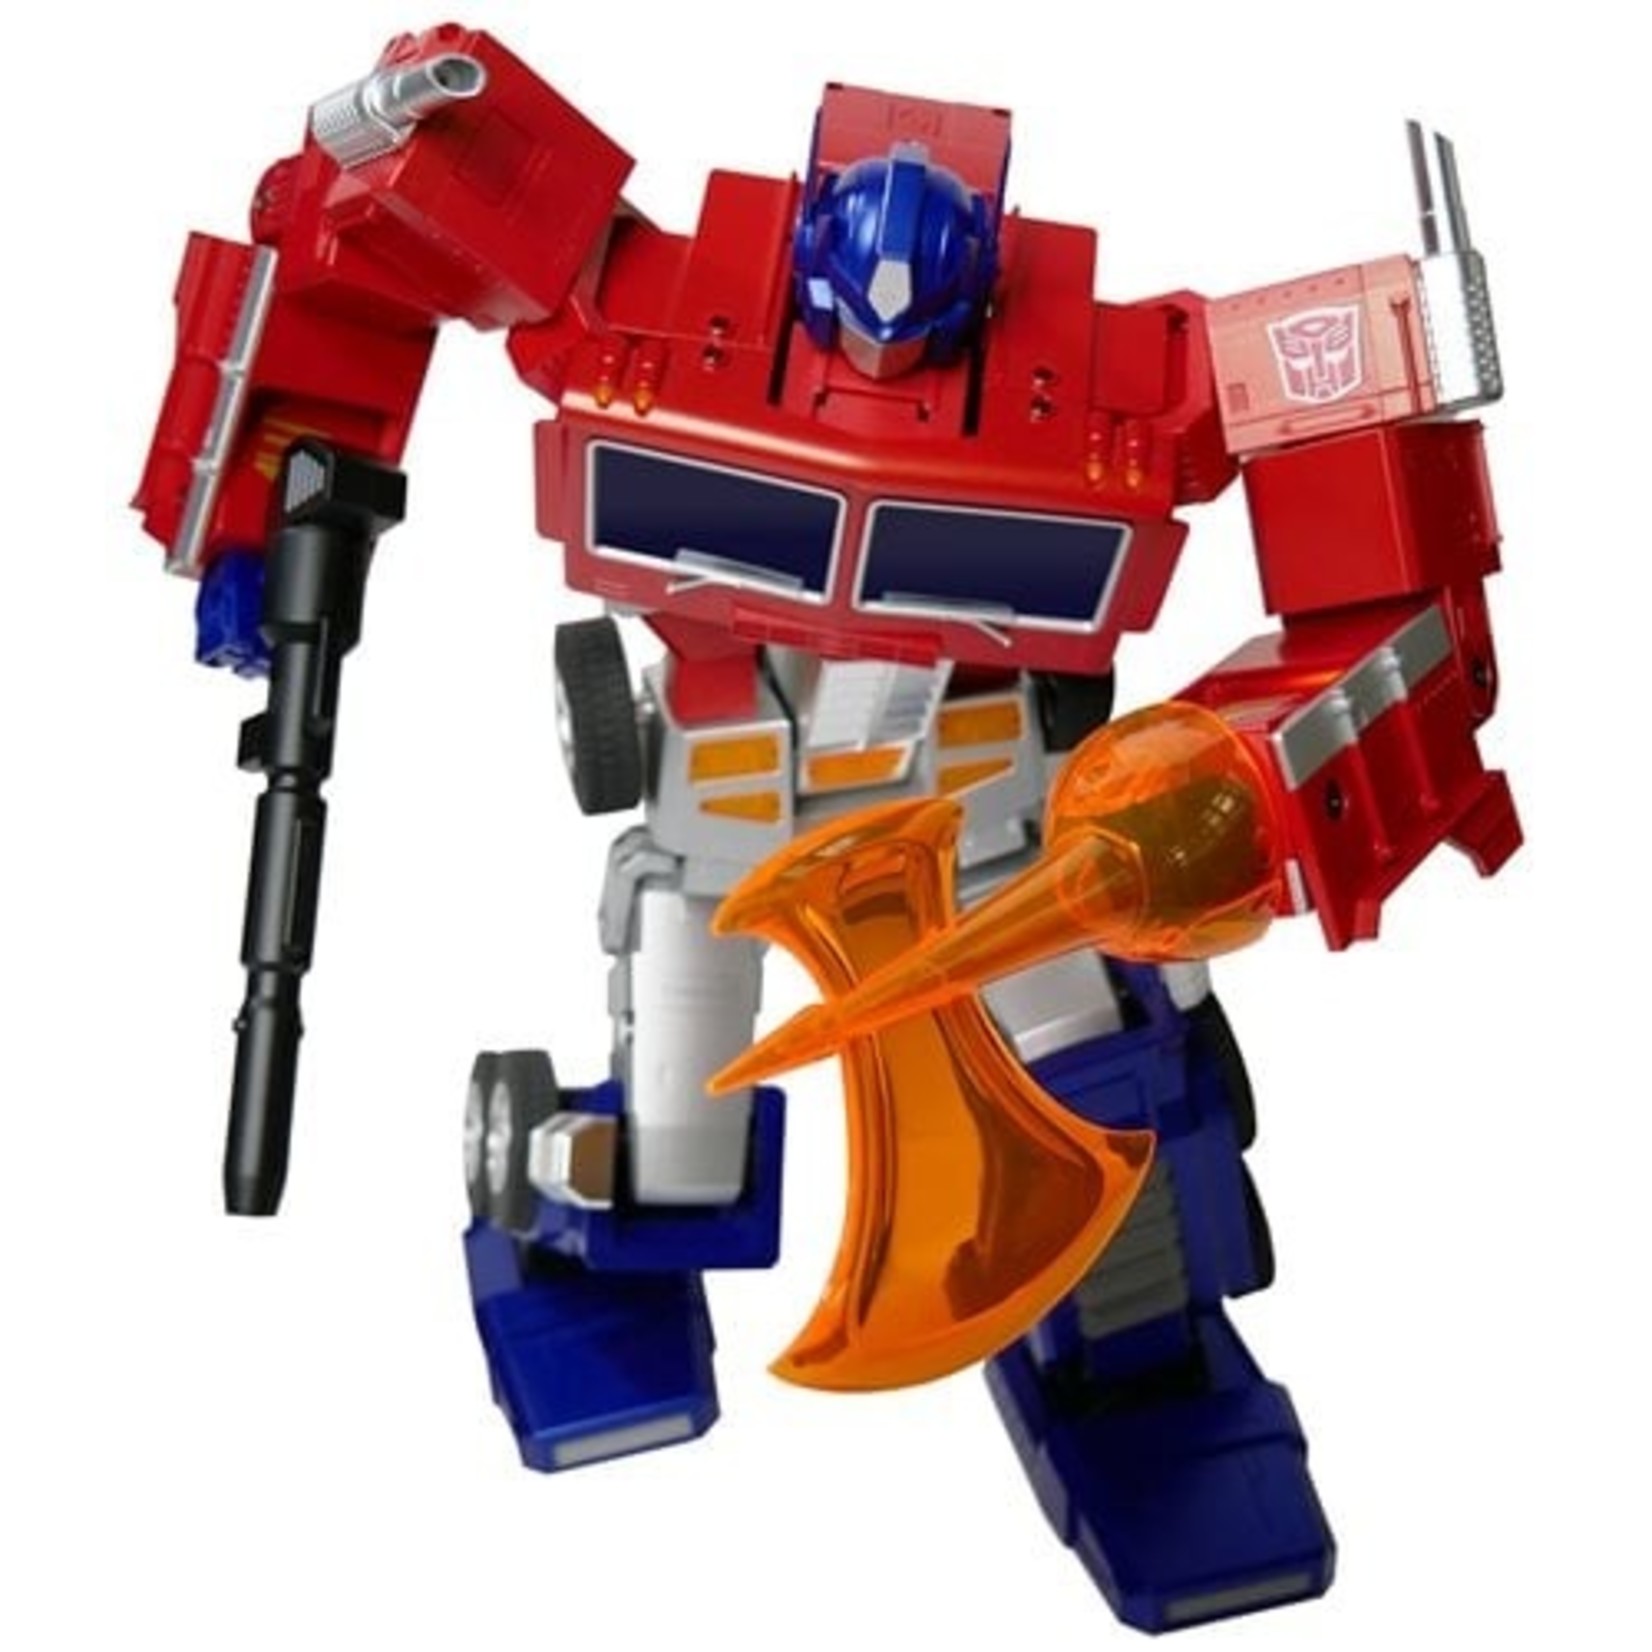 Transformers Optimus Prime Elite Auto-Converting Robot